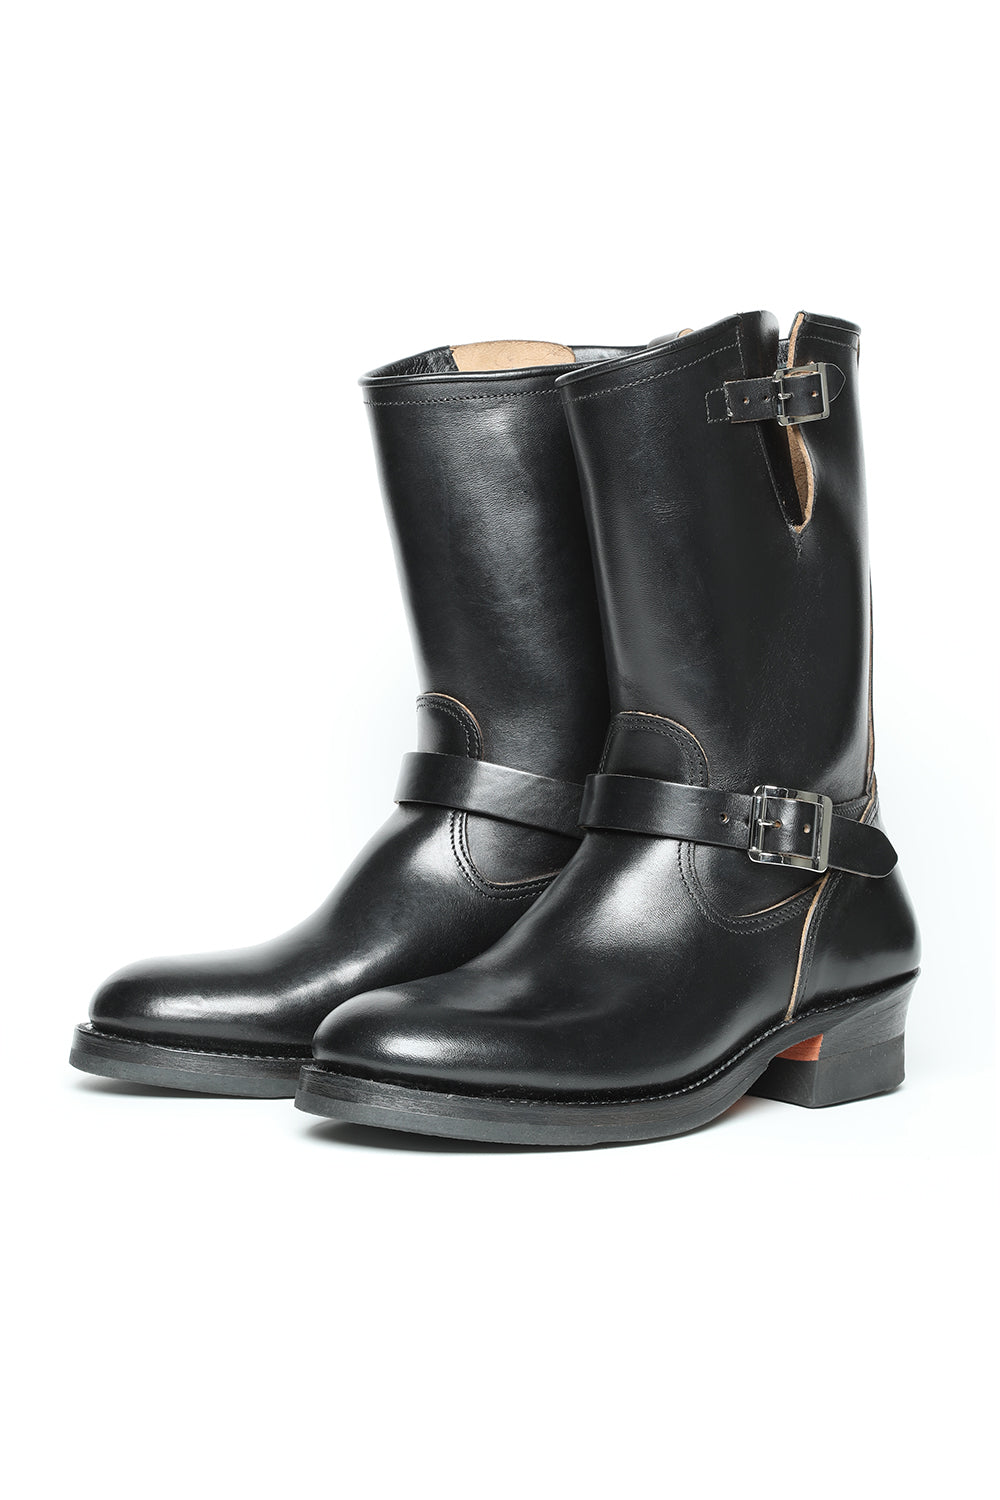 21,600円Lot.444 Engineer Boots / Horsebutt Black